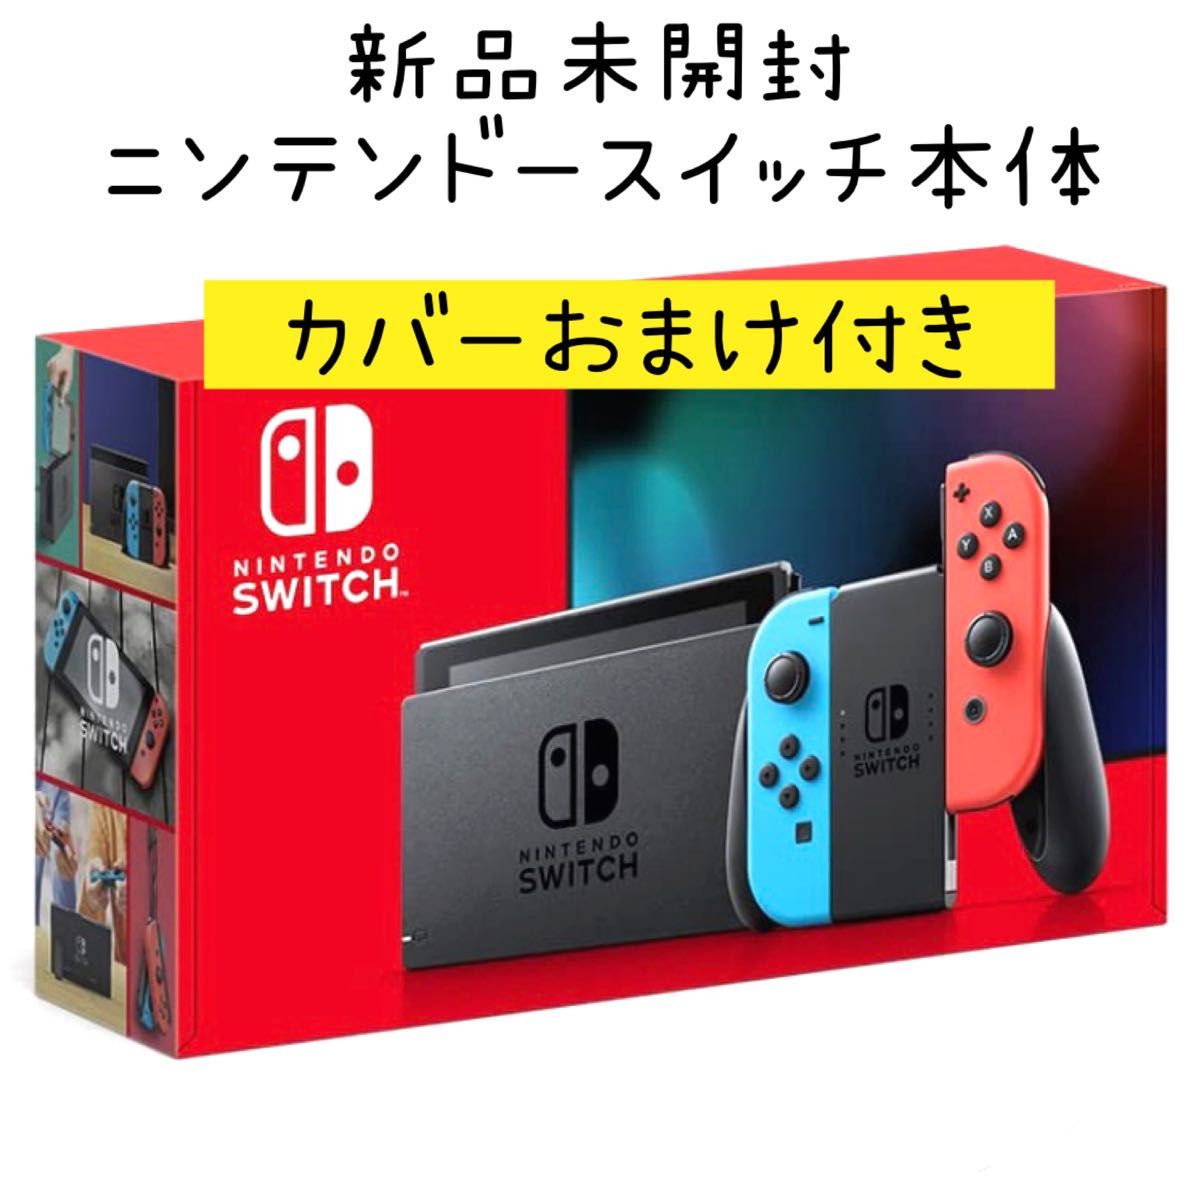 再×14入荷 Nintendo Switch ネオン 新品未開封 本体 任天堂 スイッチ